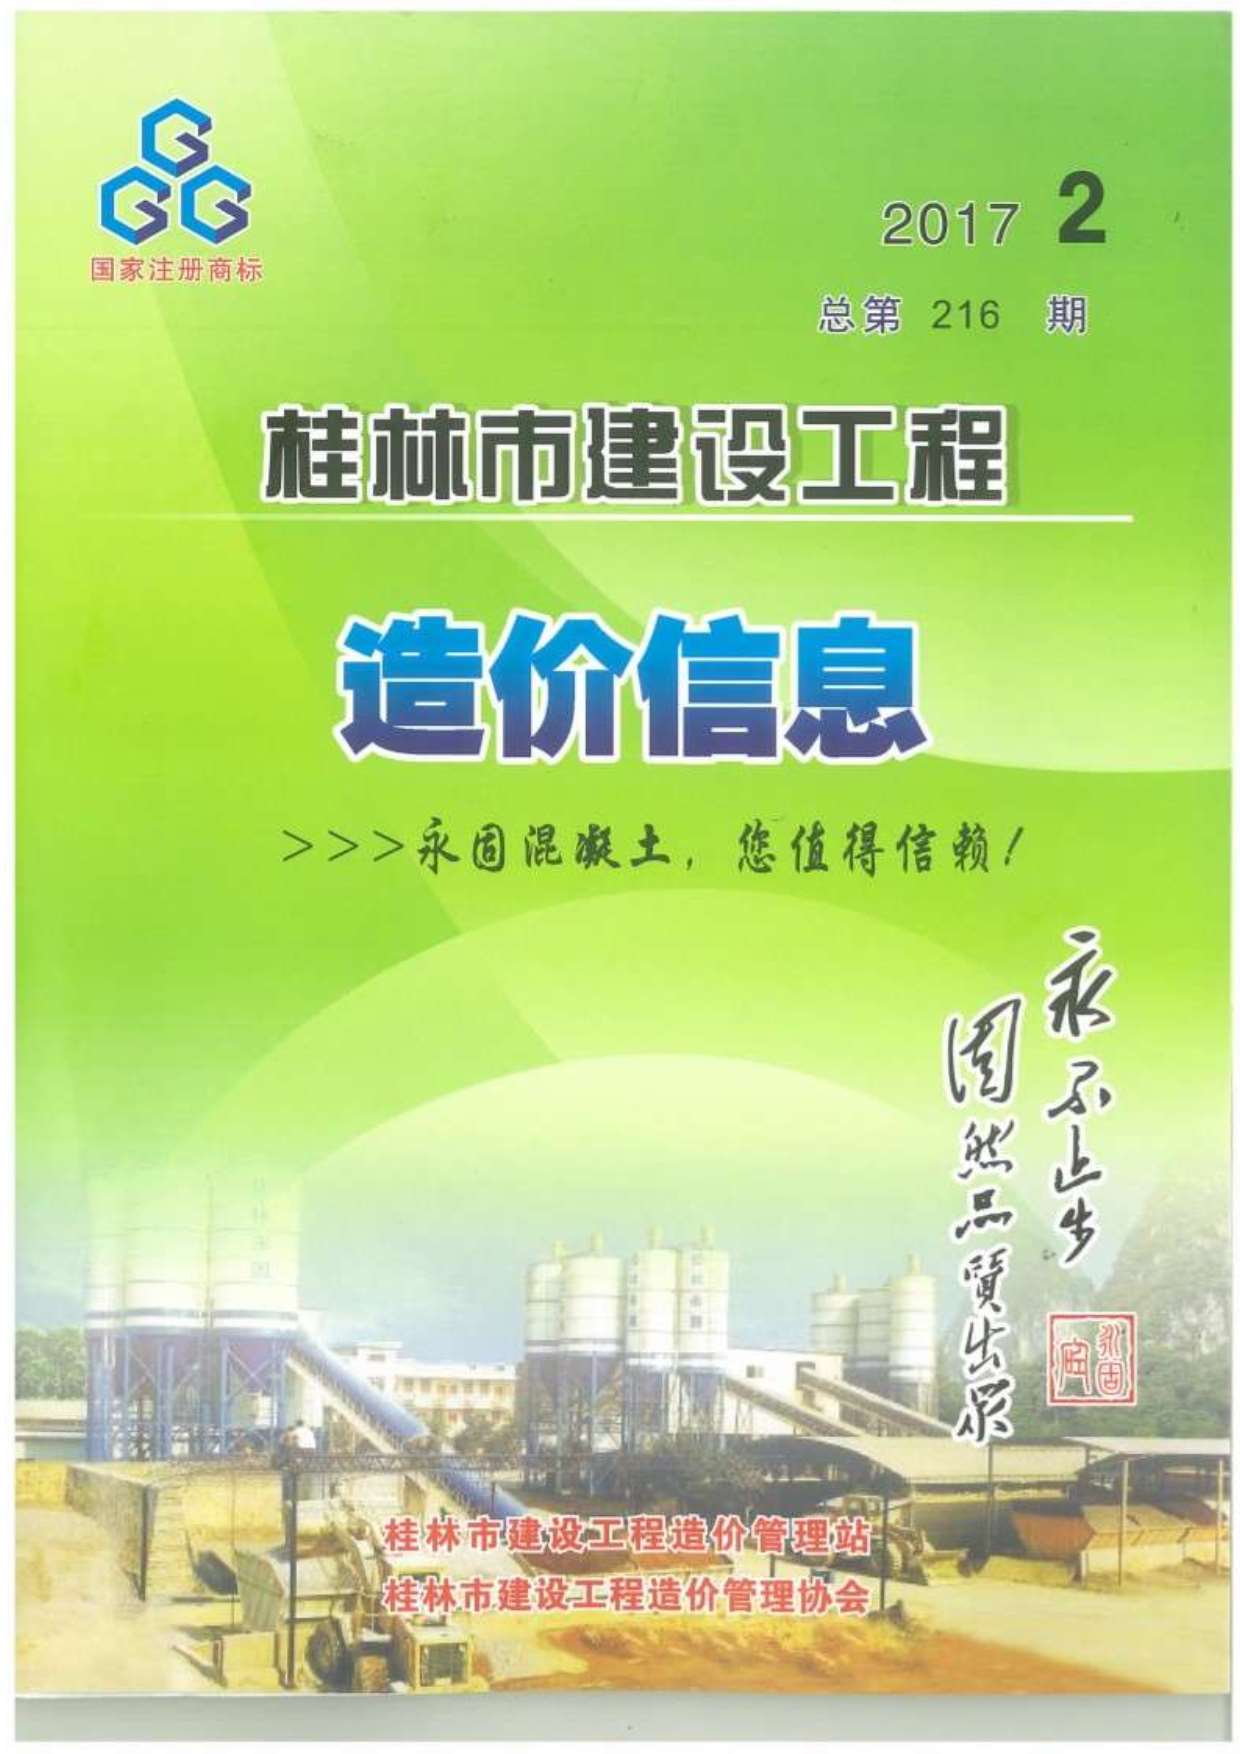 桂林市2017年2月建设工程造价信息